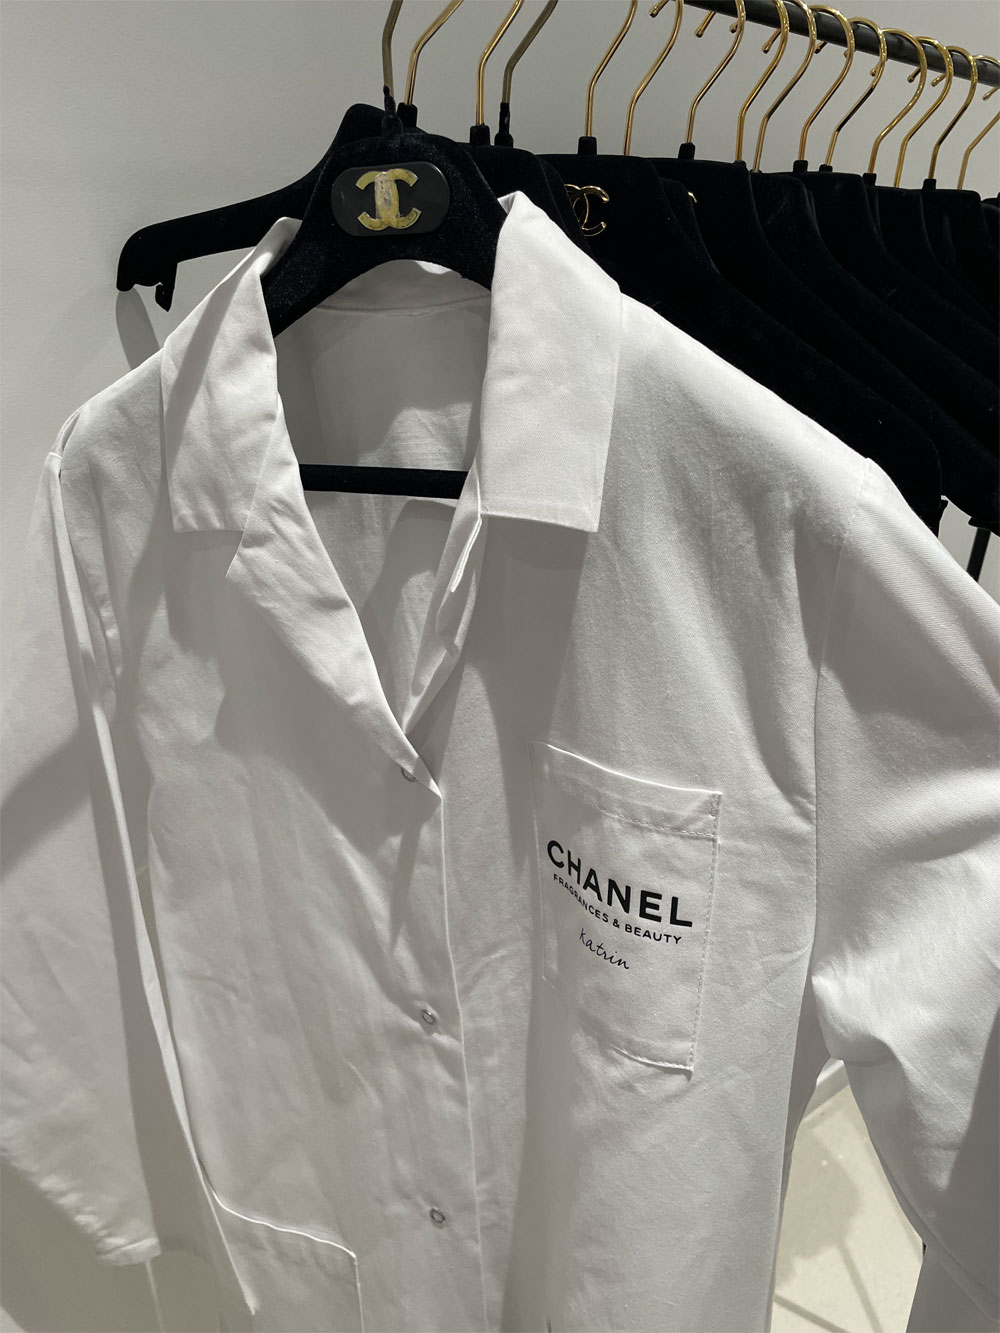 Erstmals in der Geschichte von Chanel gab es die Möglichkeit eines Besuchs im Forschungszentrum von Pantin. Sonrisa war dabei und hat neben Bildern auch viele Hintegrundinformationen mitgebracht.